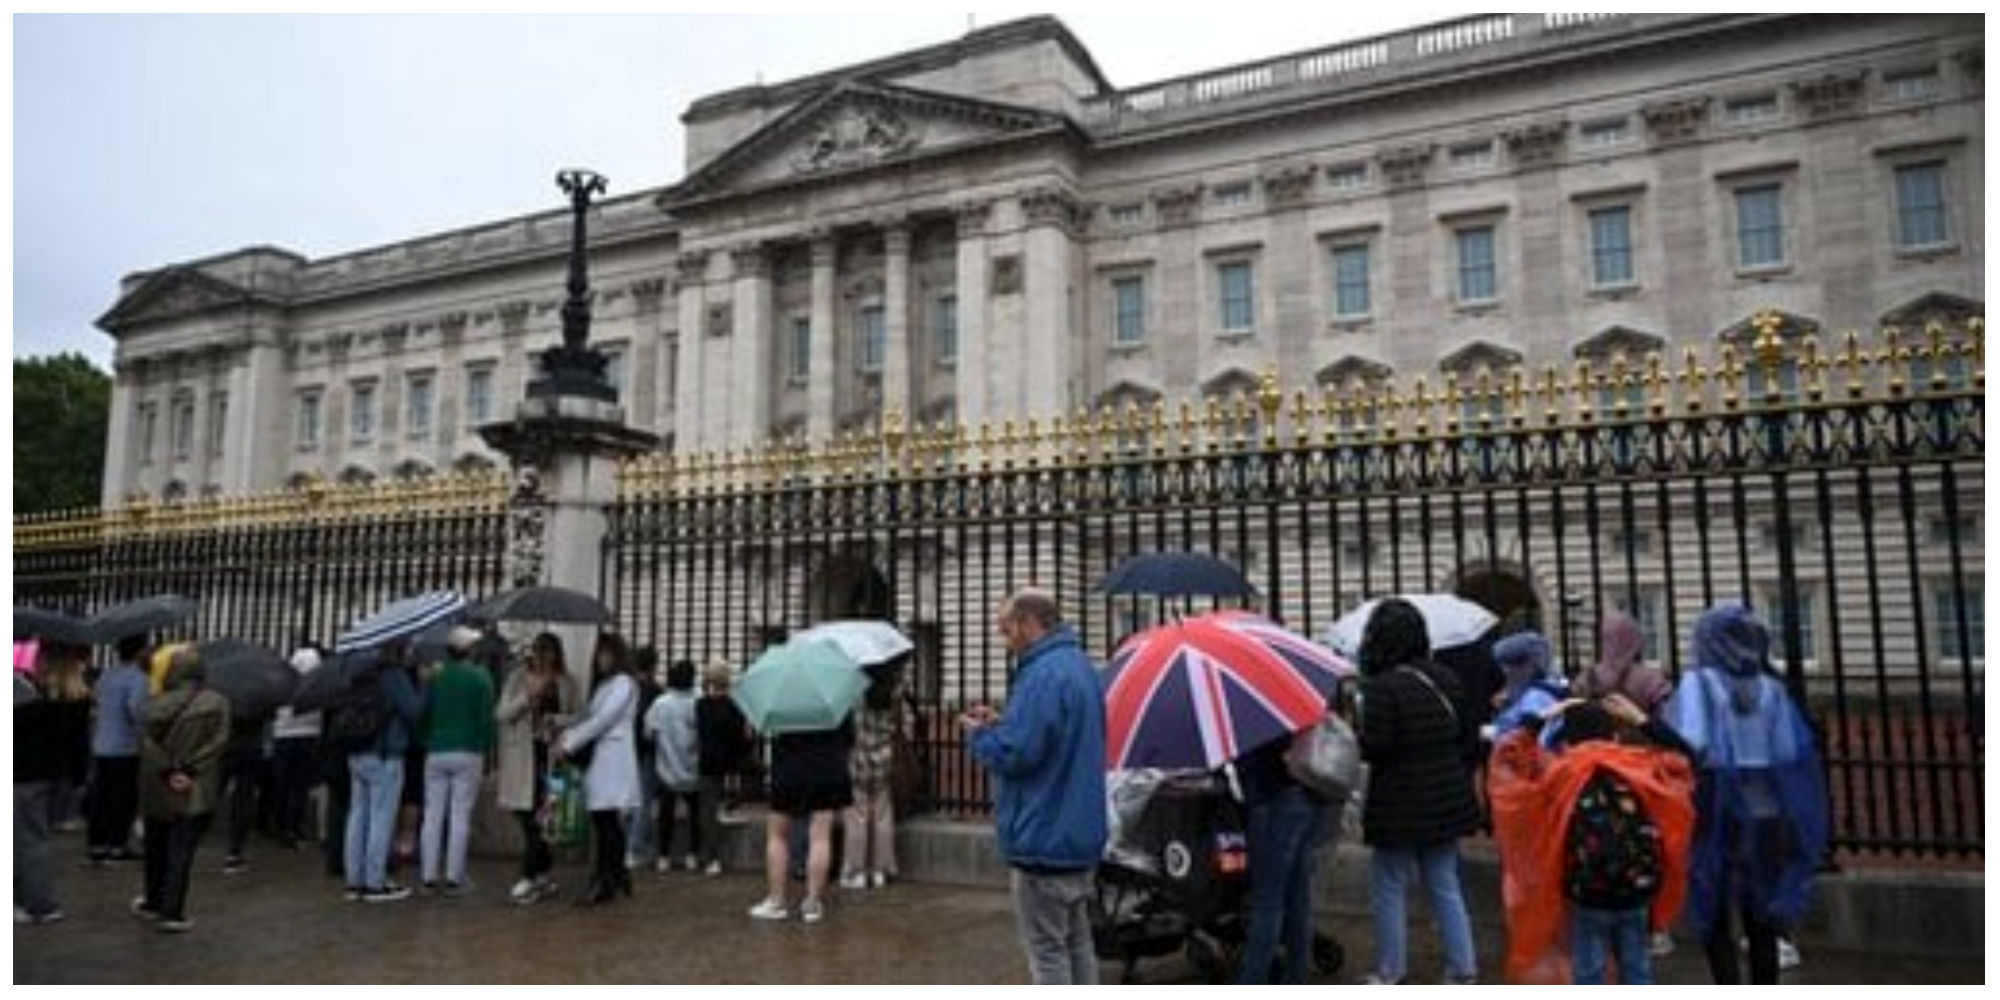 تجمع مردم پشت کاخ باکینگهام لندن و محل بستری ملکه در پی خبرهای متناقض از مرگ الیزابت دوم+عکس